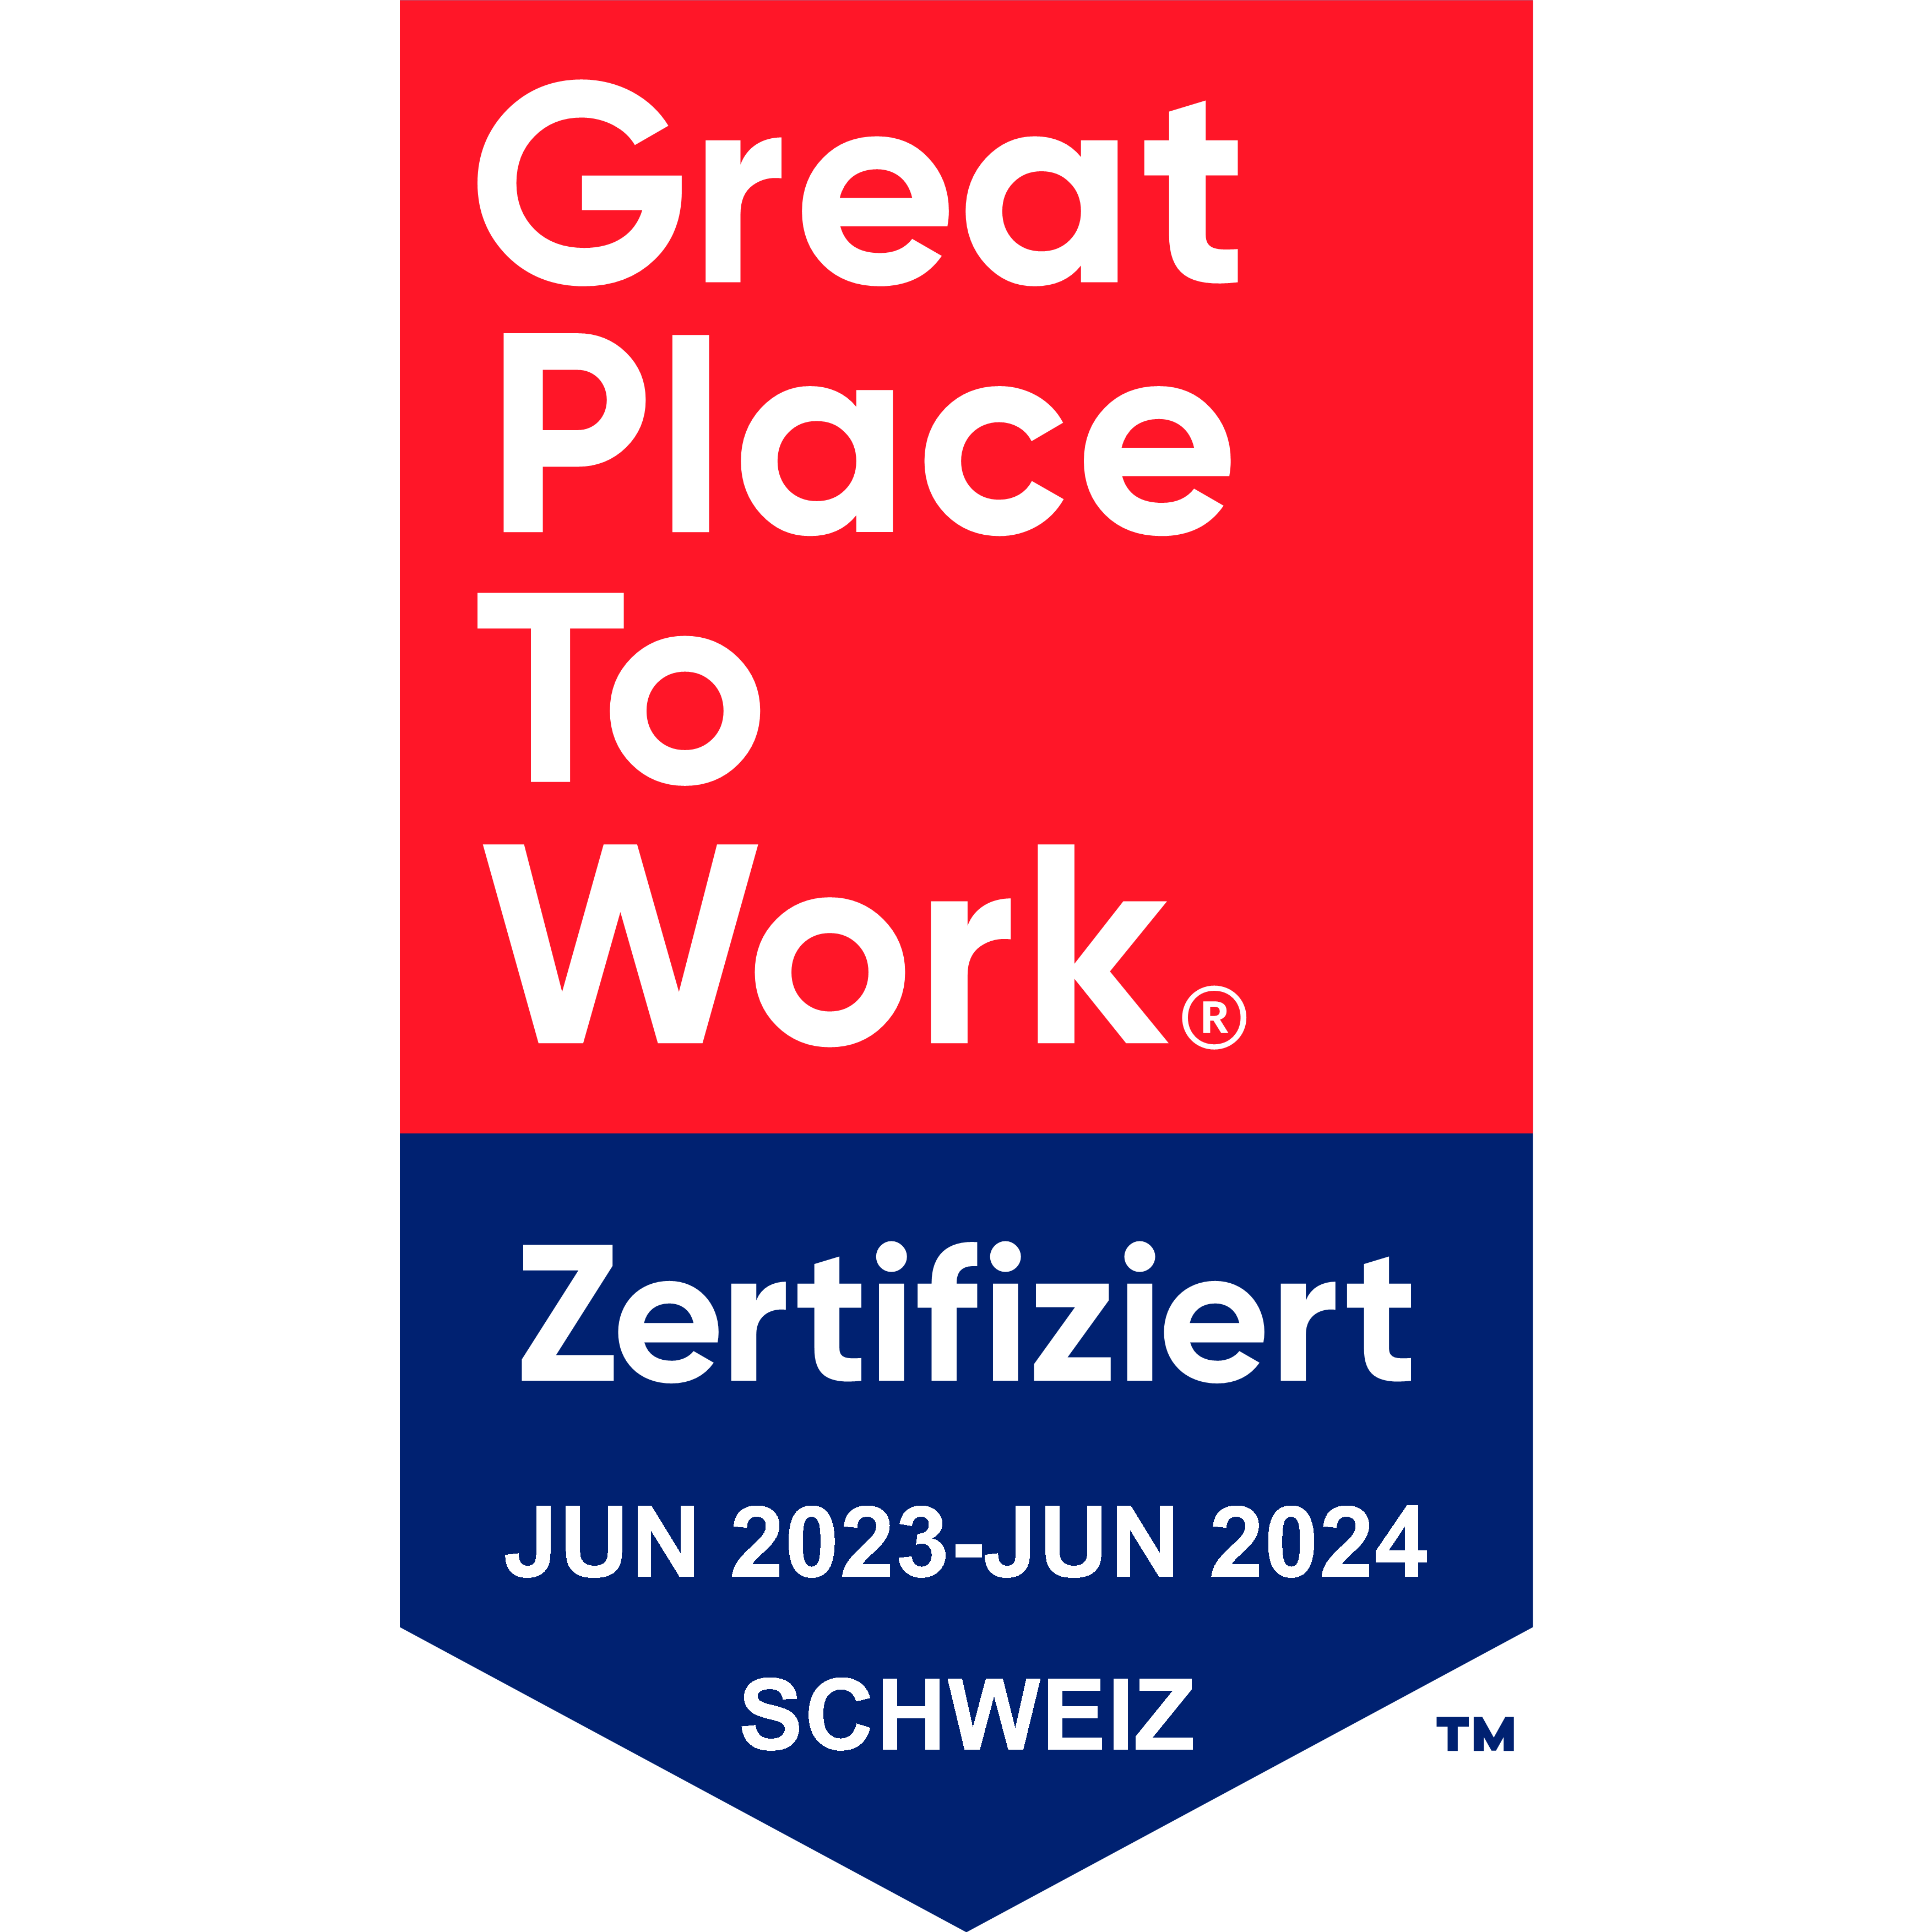 Great Place to Work Zertifikat für Schweiz, gültig von Juni 2023 bis Juni 2024.